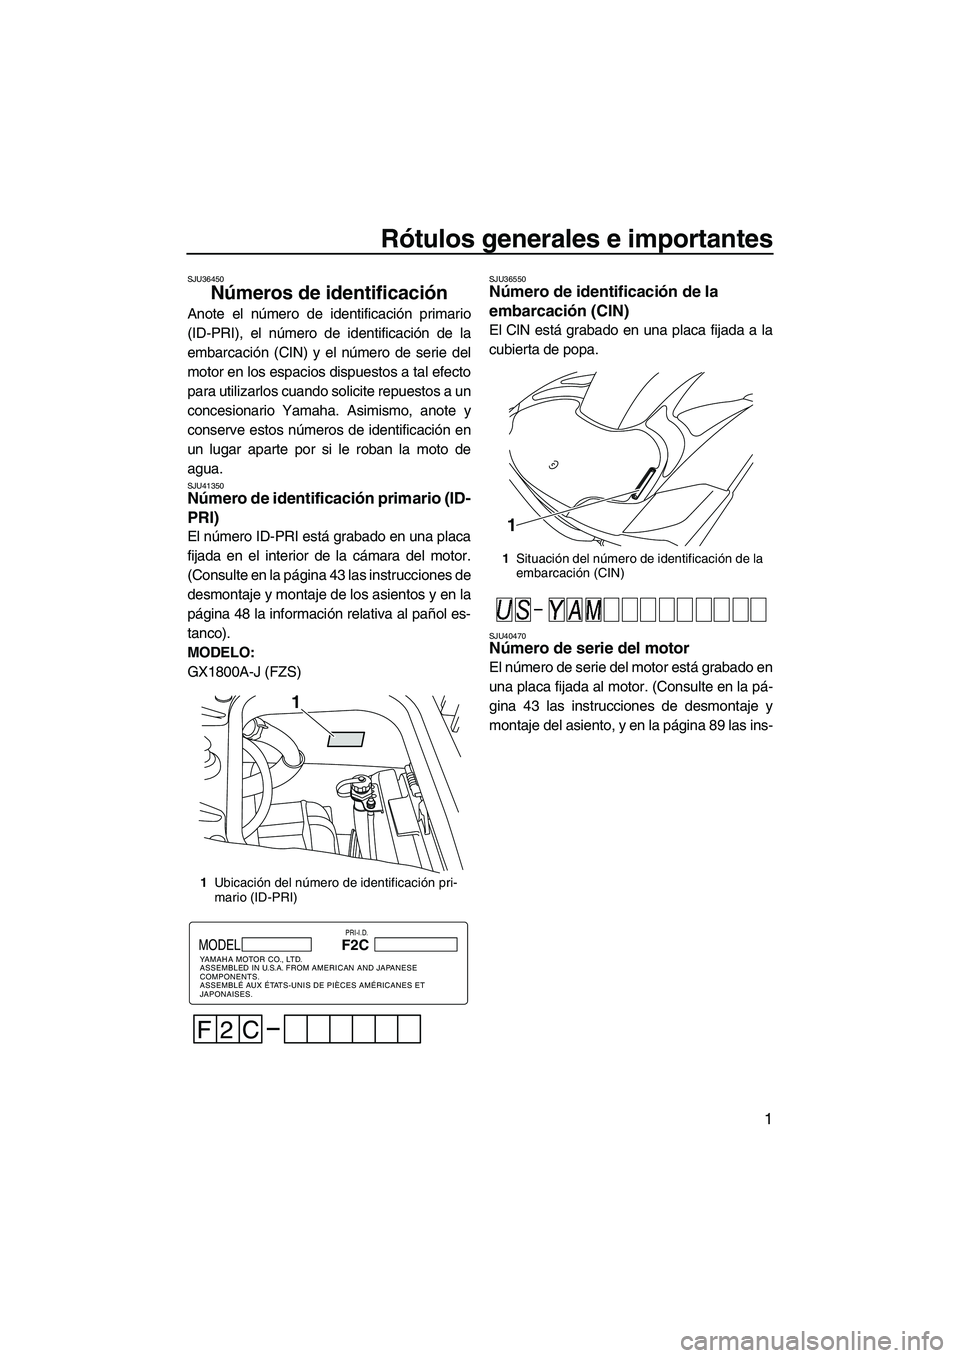 YAMAHA FZS 2010  Manuale de Empleo (in Spanish) Rótulos generales e importantes
1
SJU36450
Números de identificación 
Anote el número de identificación primario
(ID-PRI), el número de identificación de la
embarcación (CIN) y el número de s